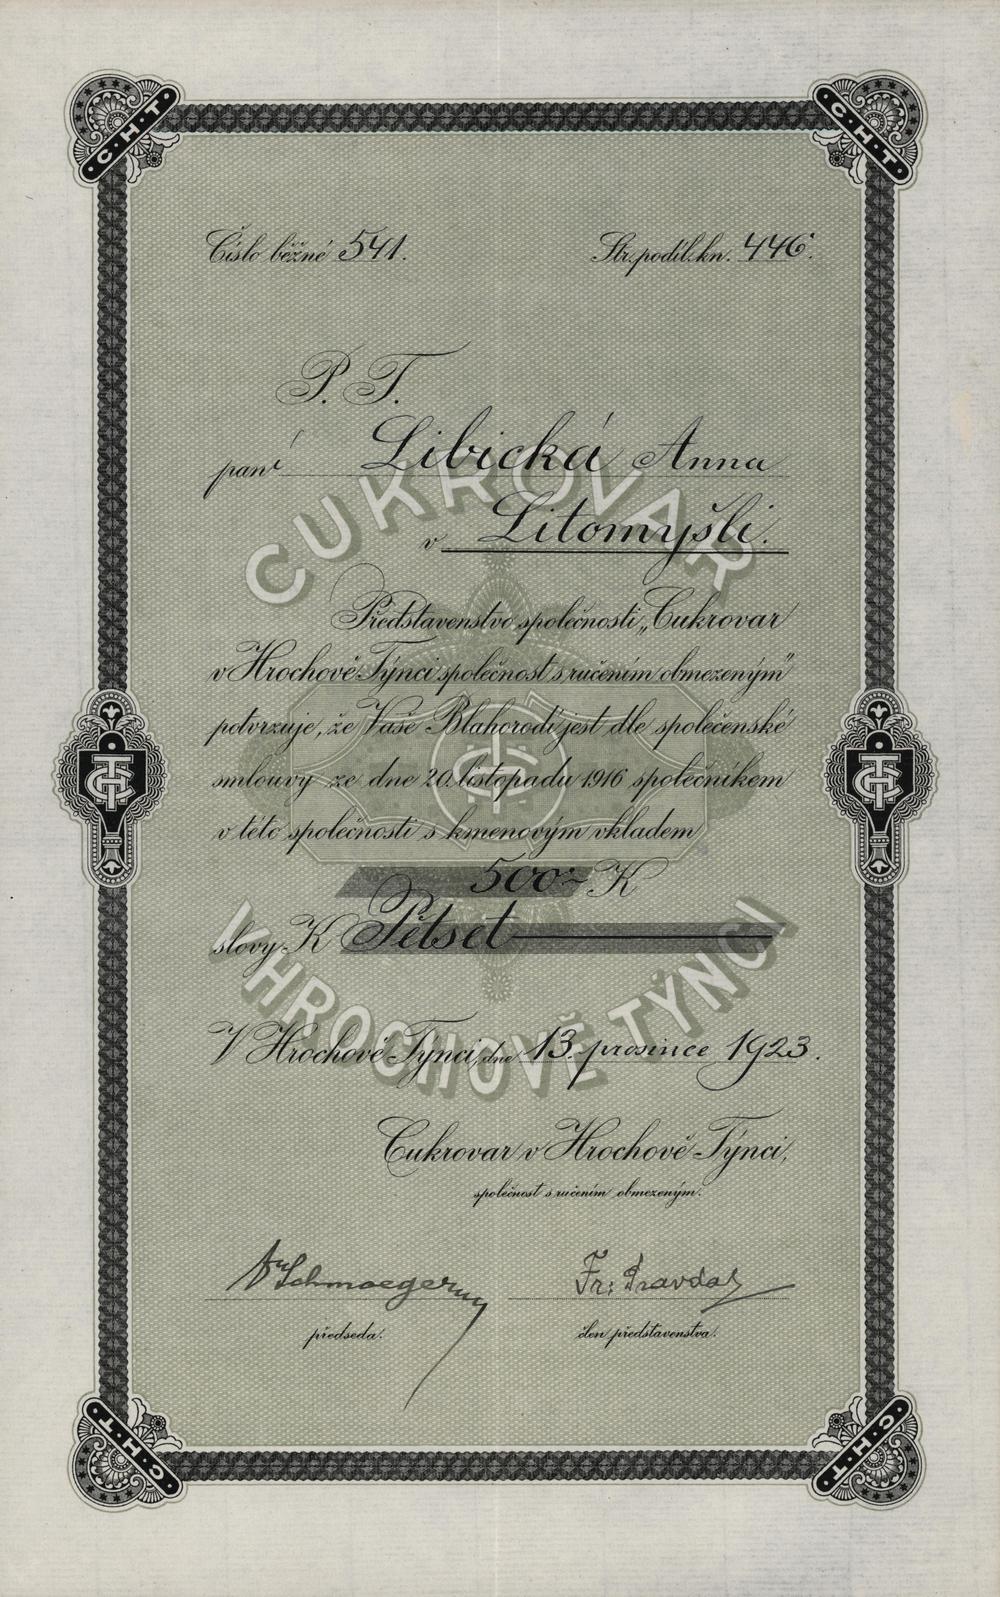 Podílový list Cukrovar v Hrochově Týnci, Hrochův Týnec 1923, 500 Kč